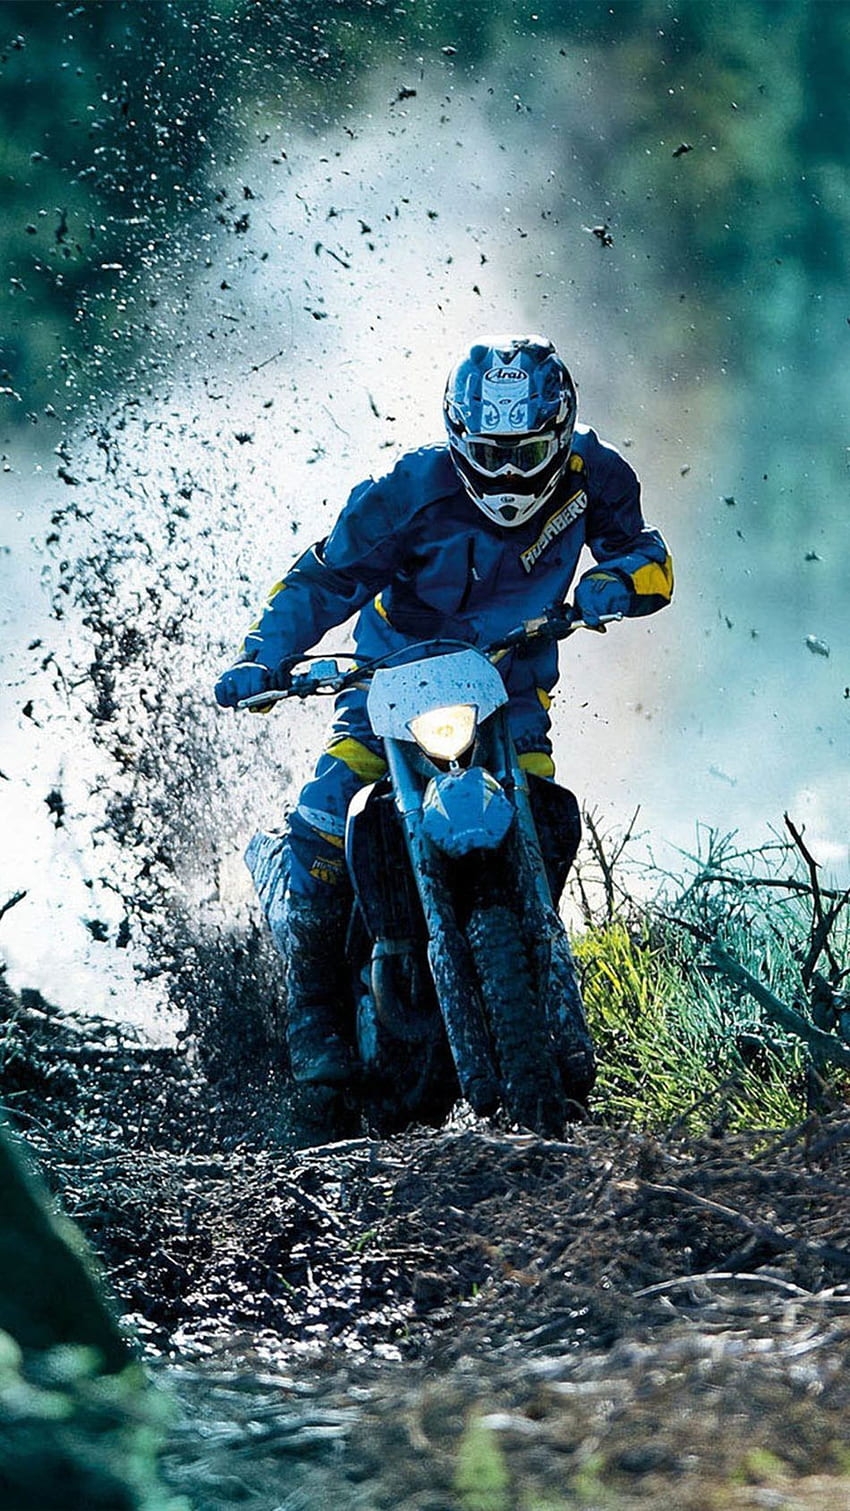 Drift Dirt Bike Race Ultra Mobile . Racing bikes, Ktm motocross, Motocross HD phone wallpaper